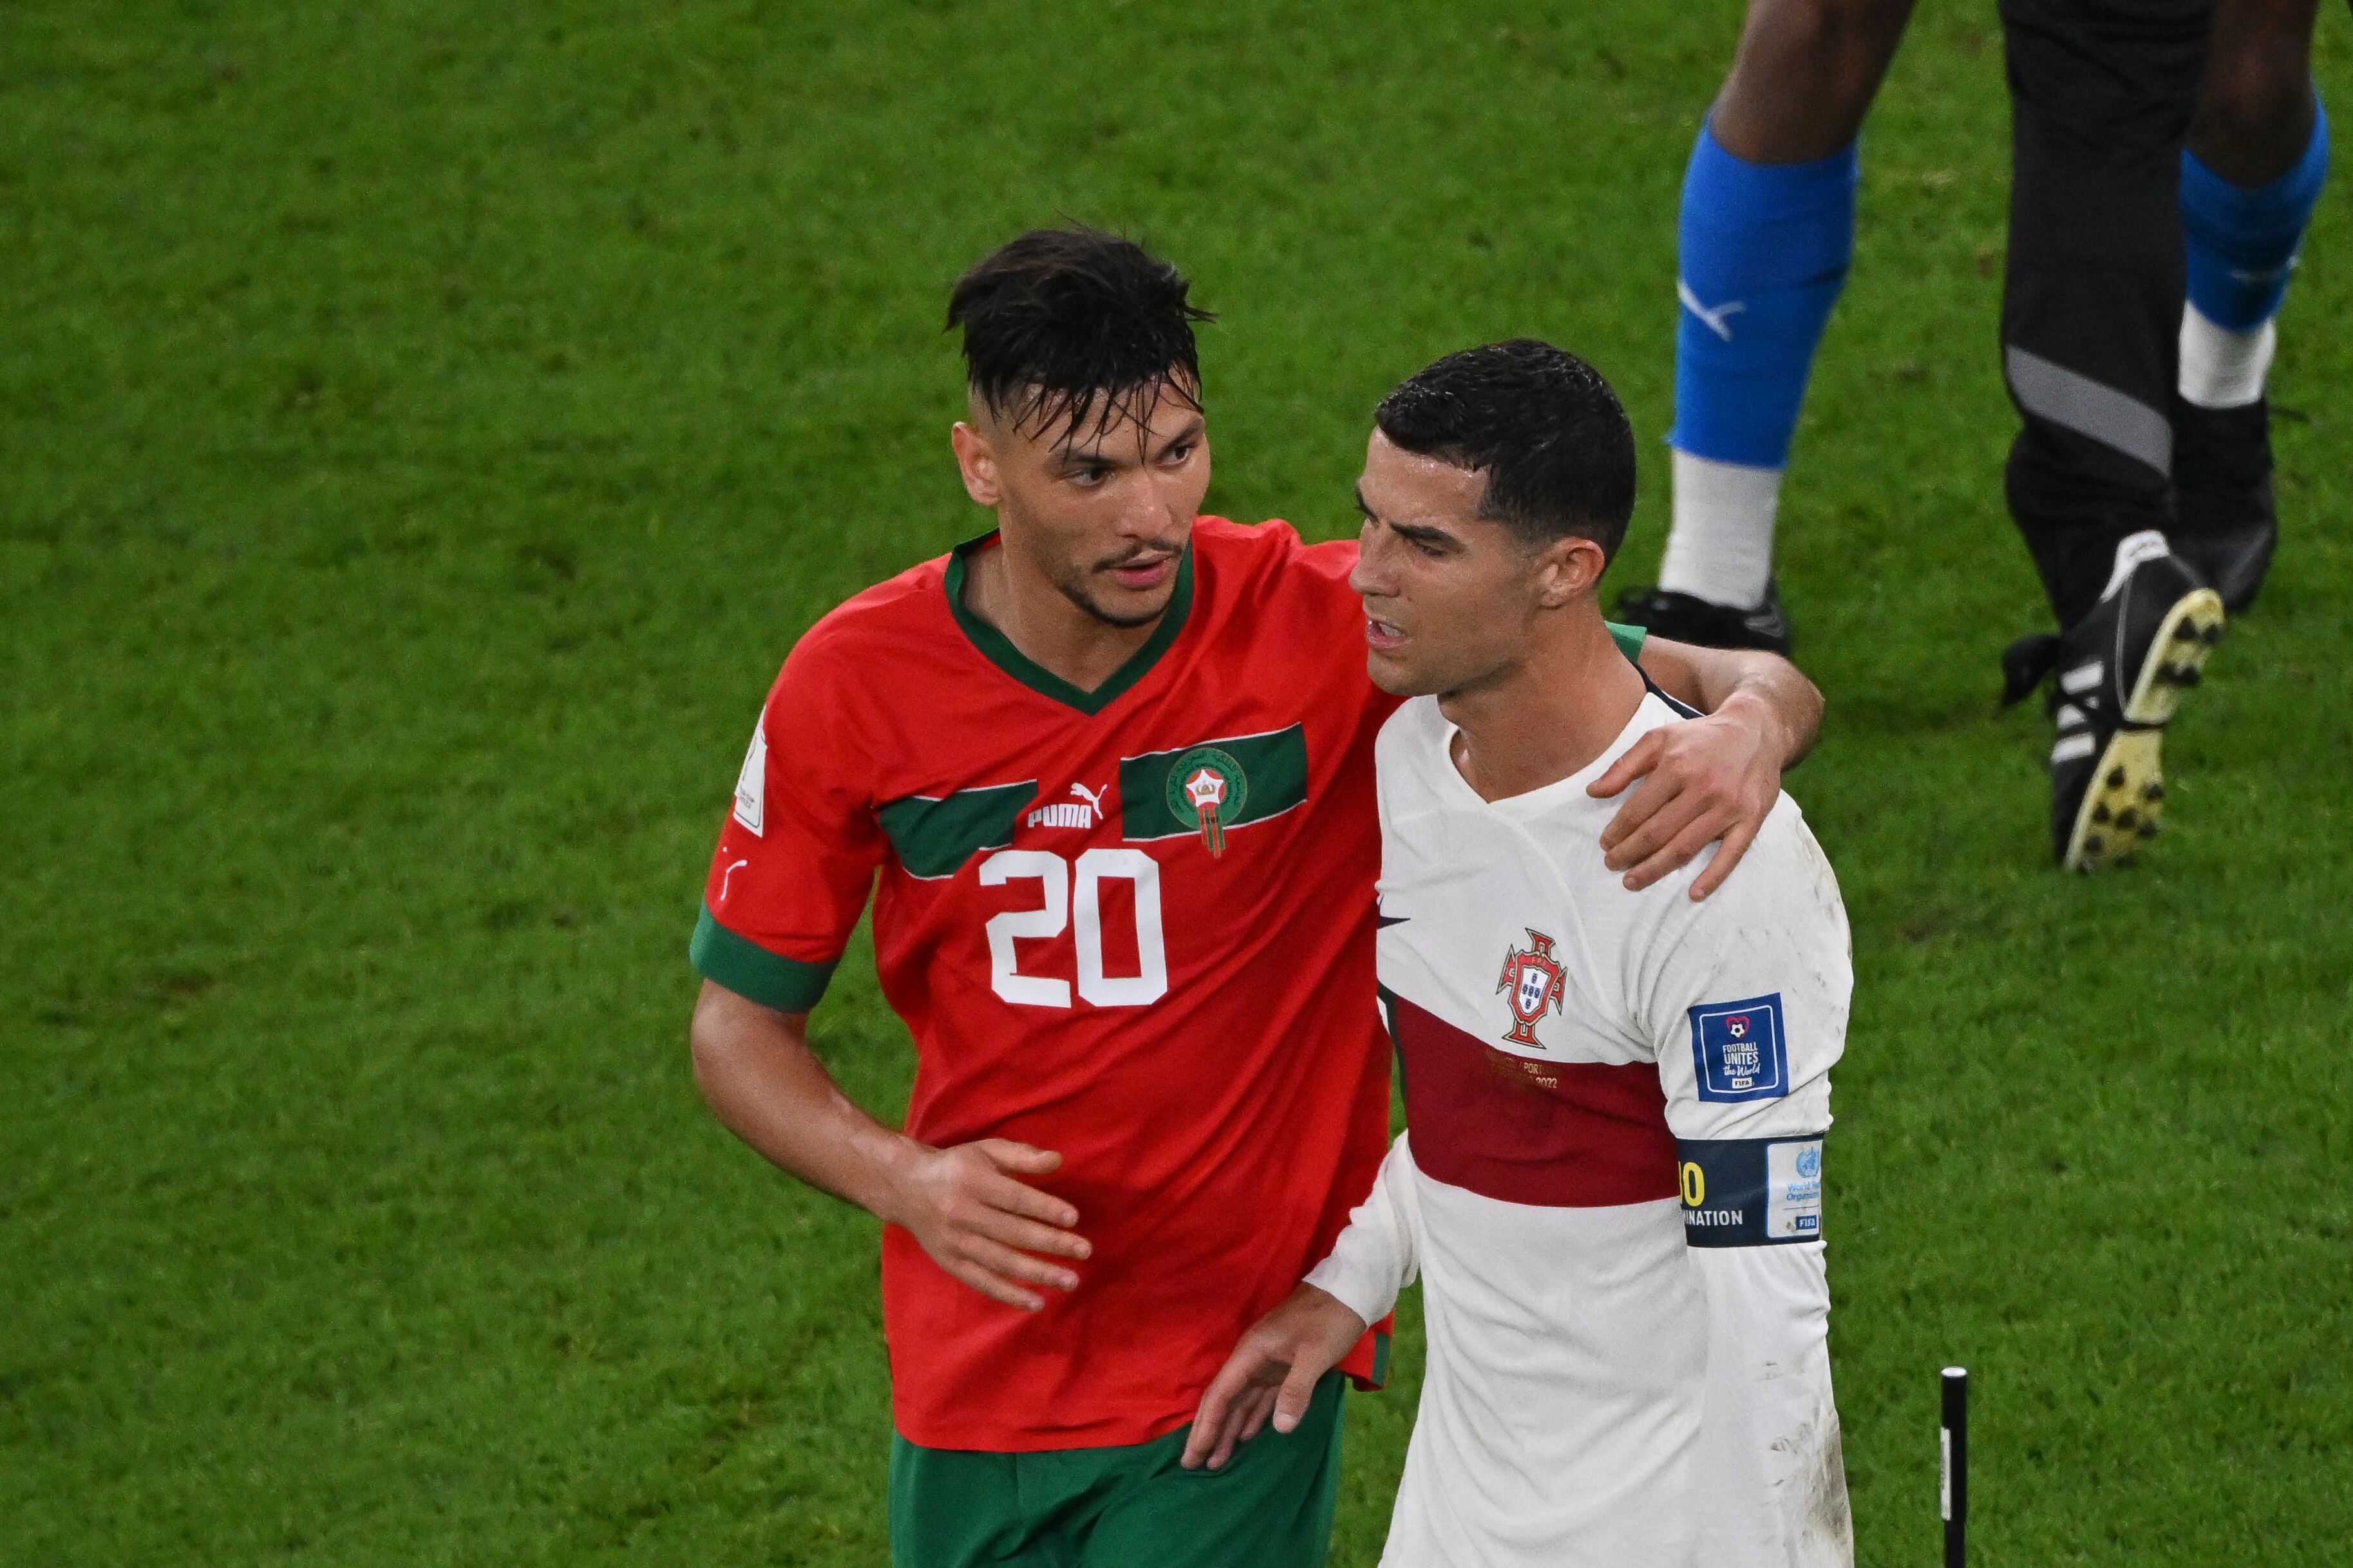 Marruecos venció 1-0 a Portugal por el Mundial Qatar 2022. (Foto: AFP)